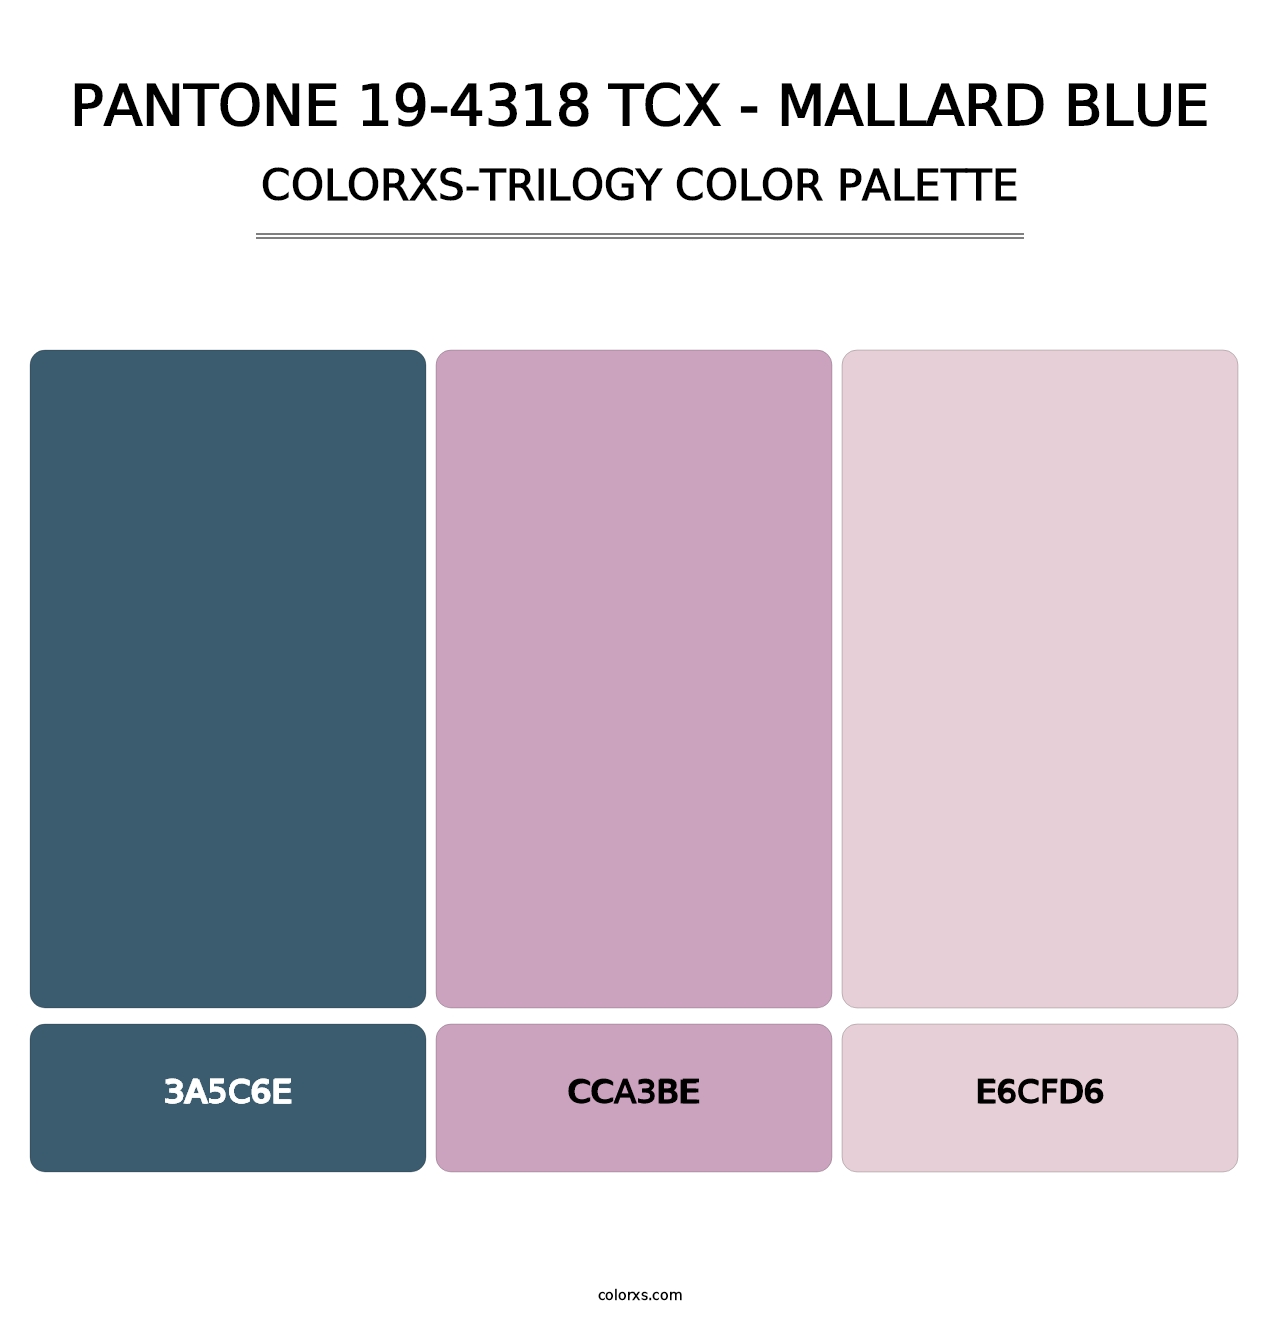 PANTONE 19-4318 TCX - Mallard Blue - Colorxs Trilogy Palette